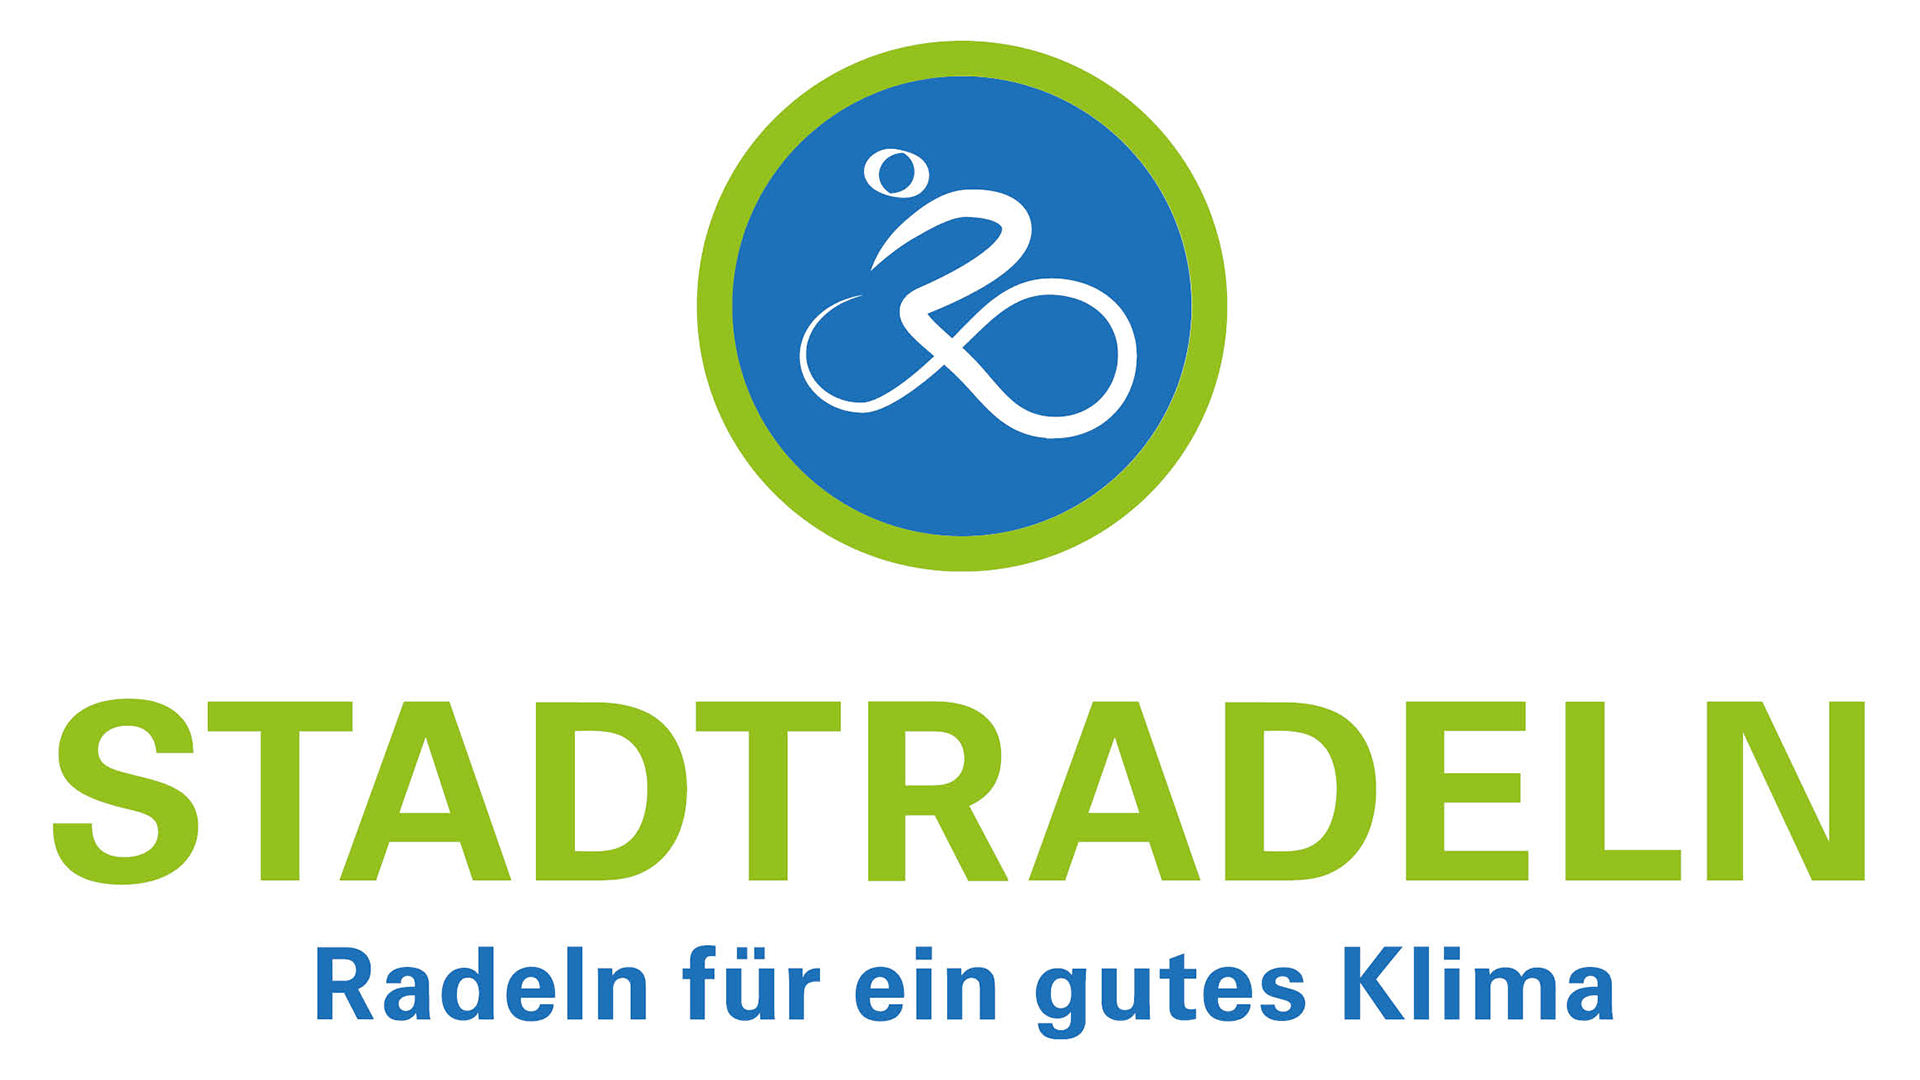 Logo des Klima-Bündnisses mit der Aufschrift "Stadtradeln. Radeln für ein gutes Klima".